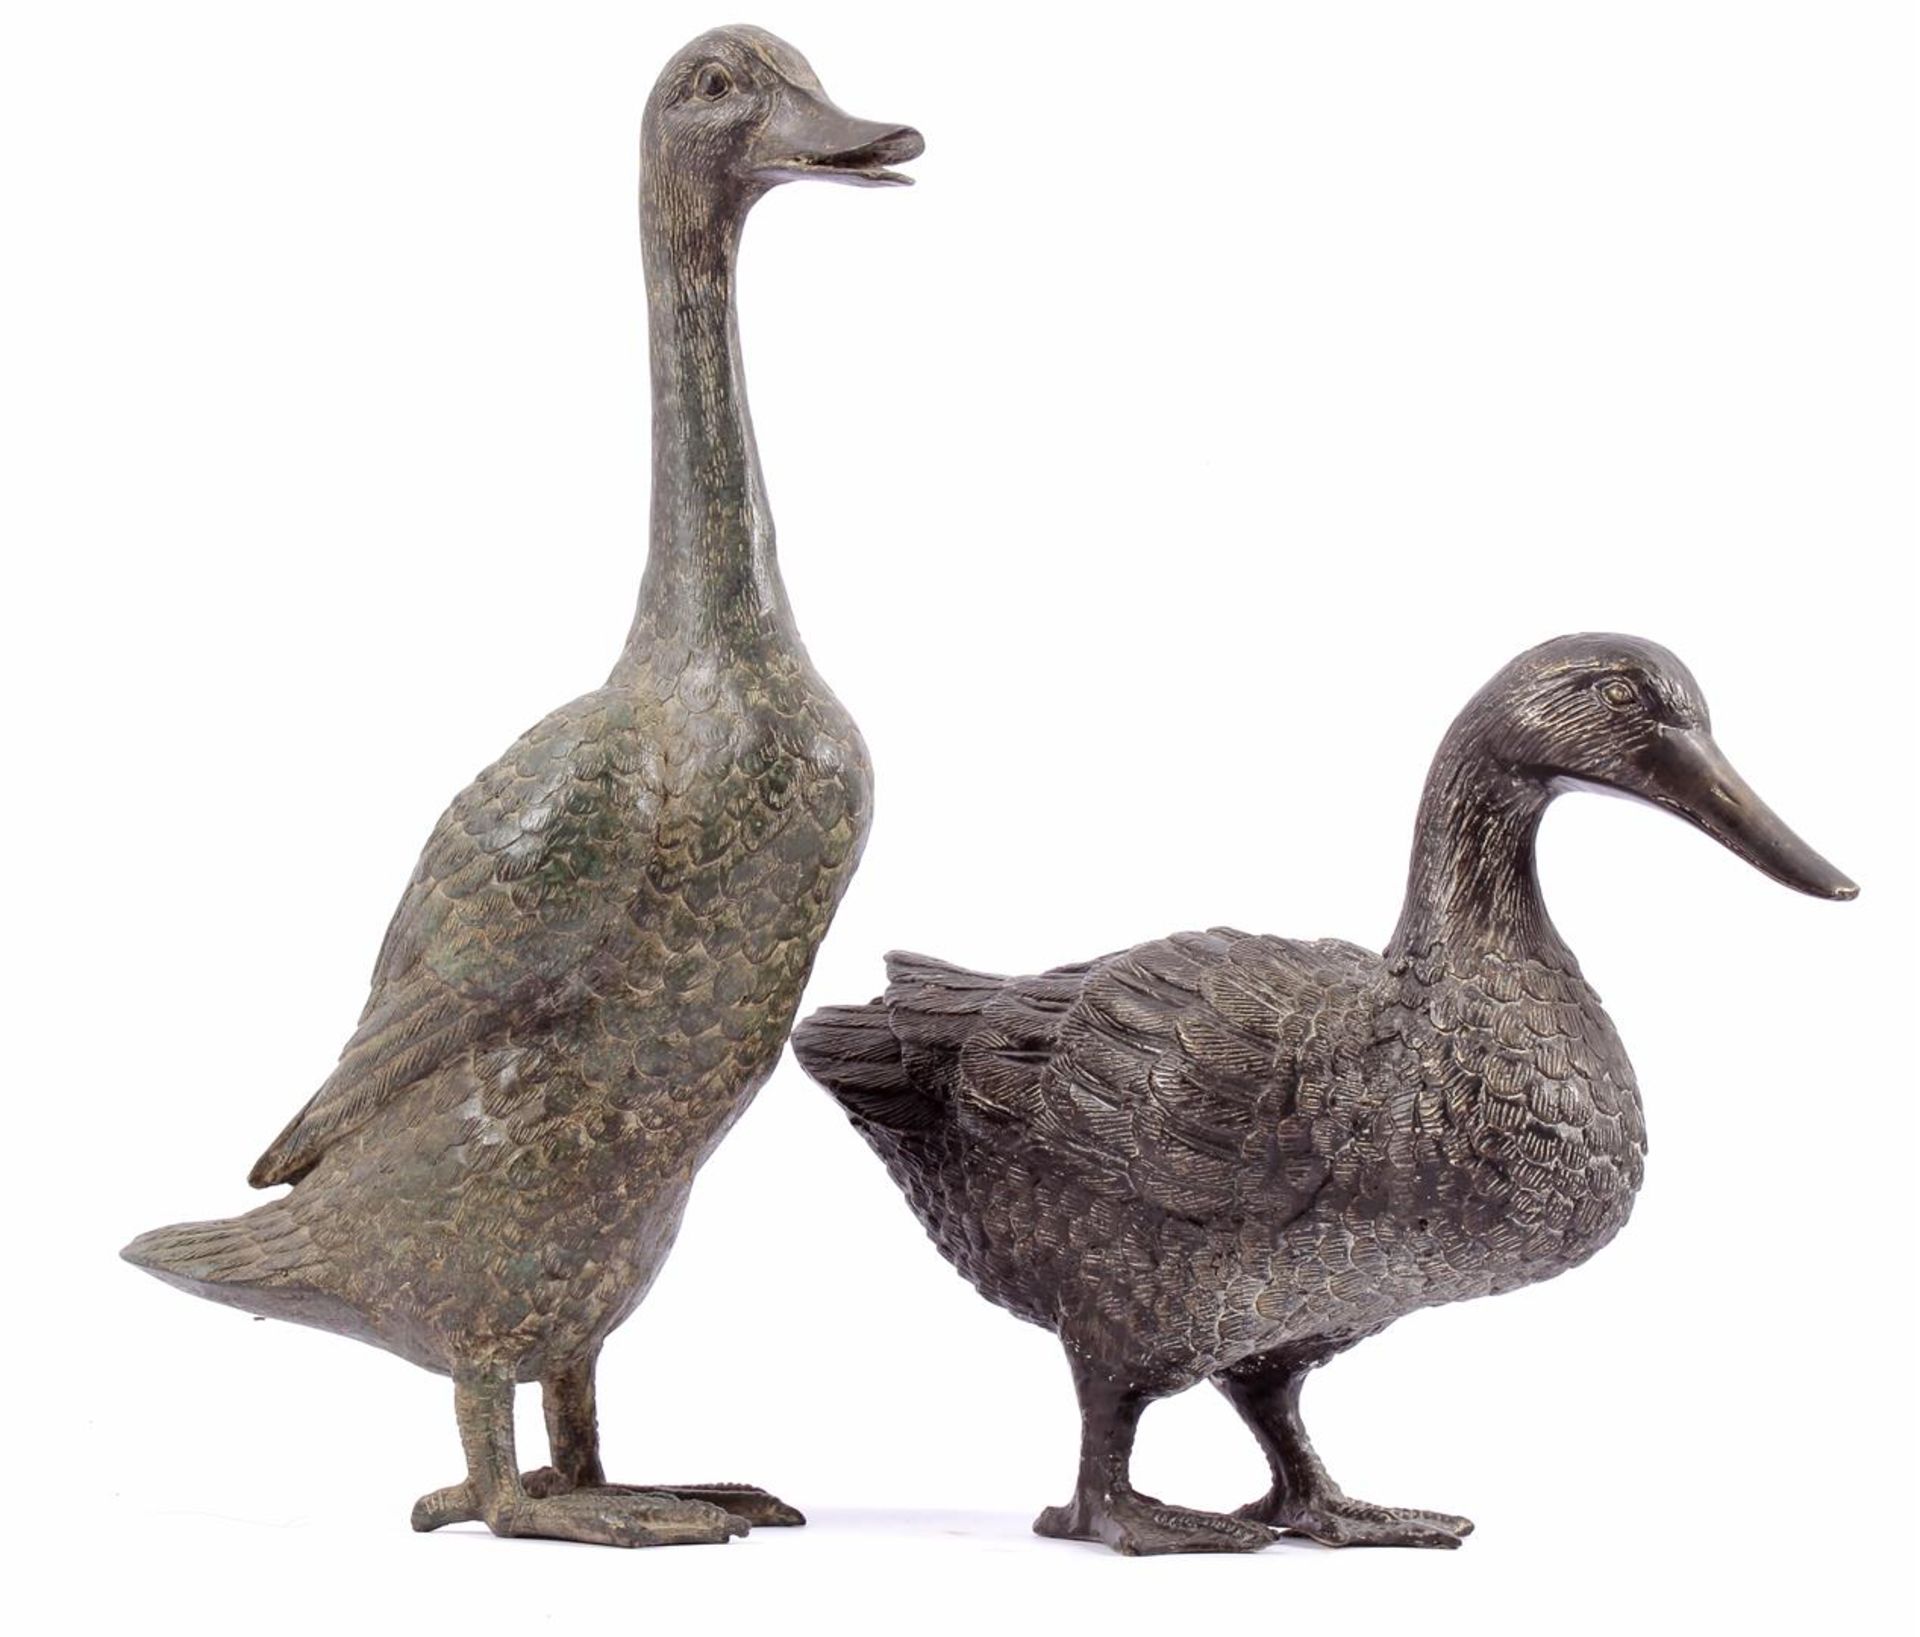 2 bronze sculptures of ducks 24 cm and 40 cm high